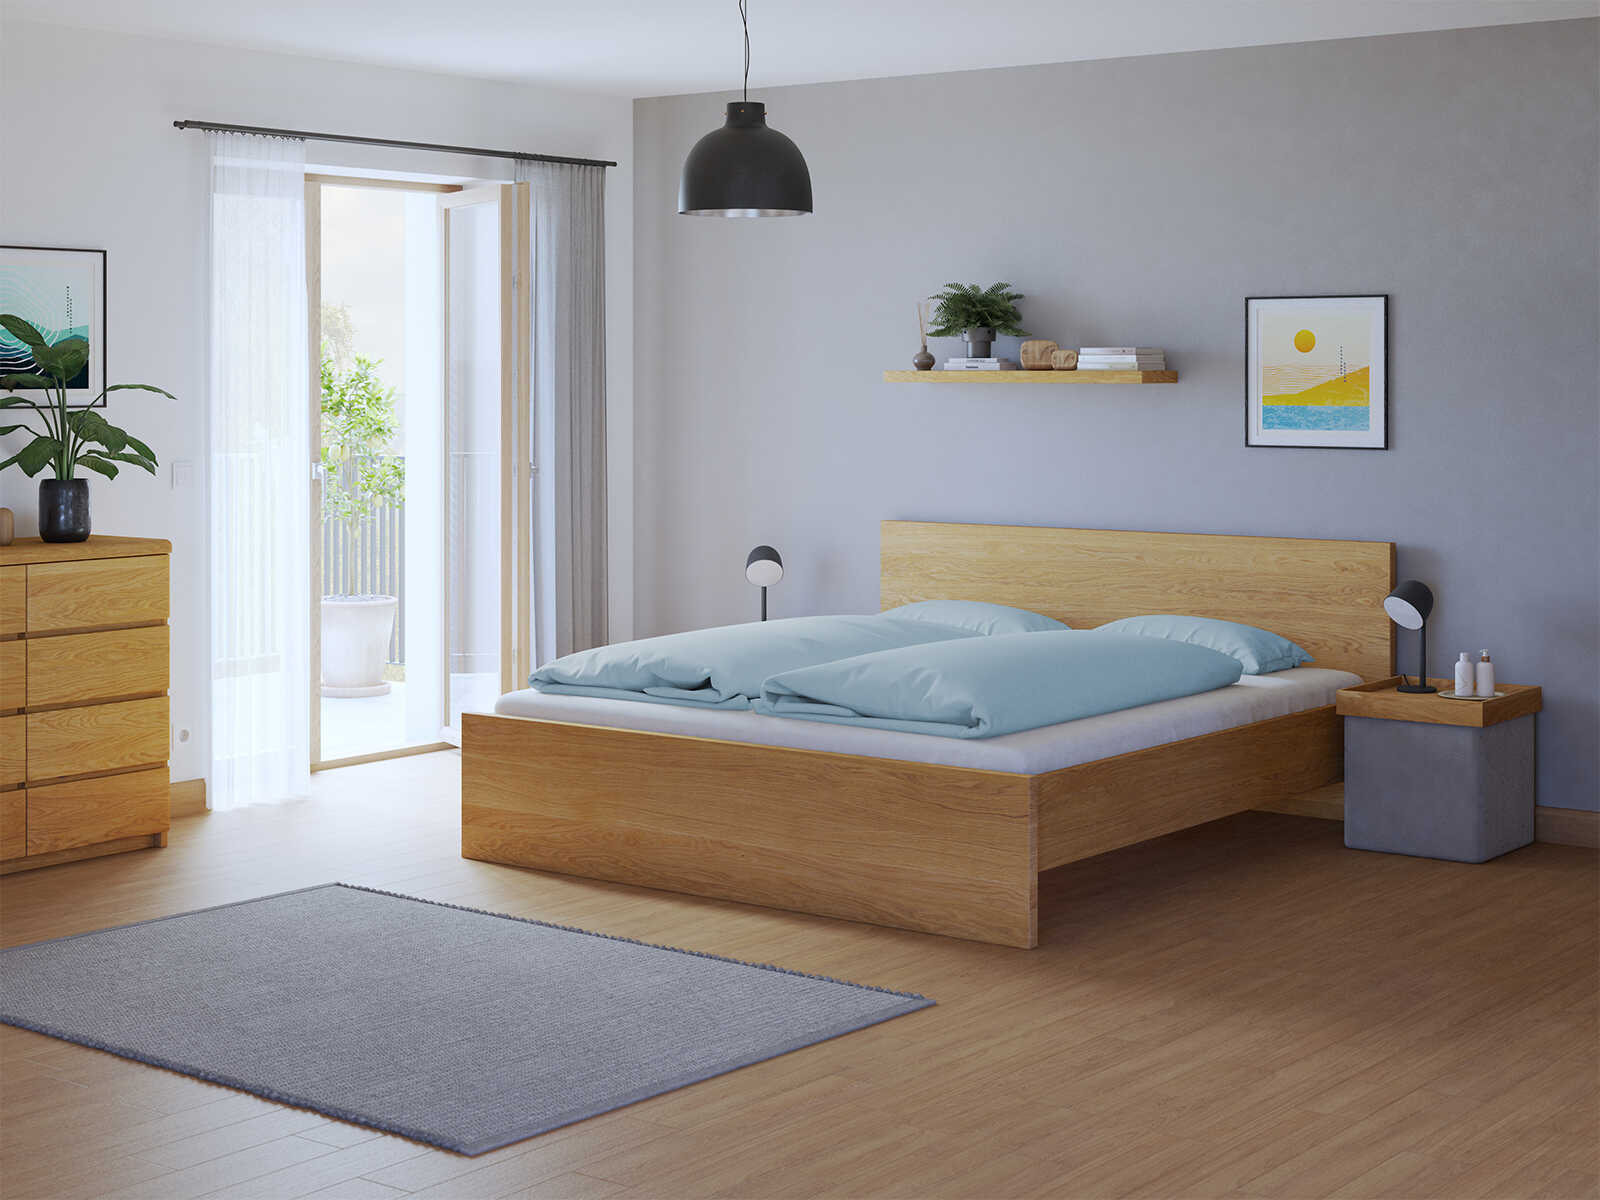 Schlafzimmer mit Bett „Raphaela“ aus Eiche in 180 x 200 cm, ohne erhöhtem Fußteil